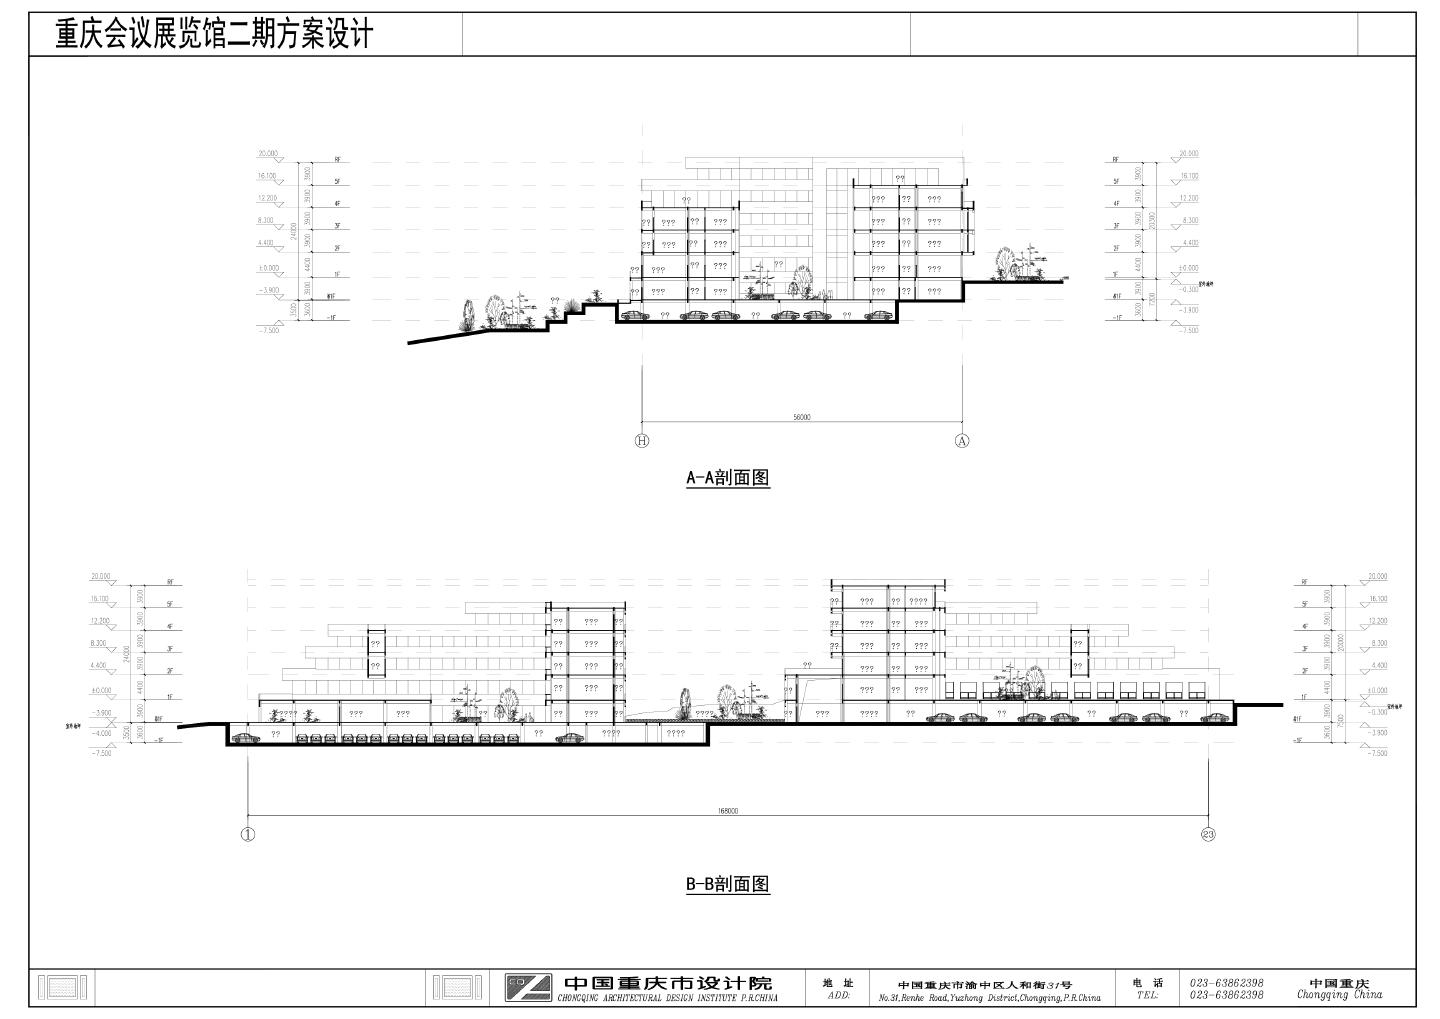 重庆会议展览馆二期-悦来项目建施平面CAD图